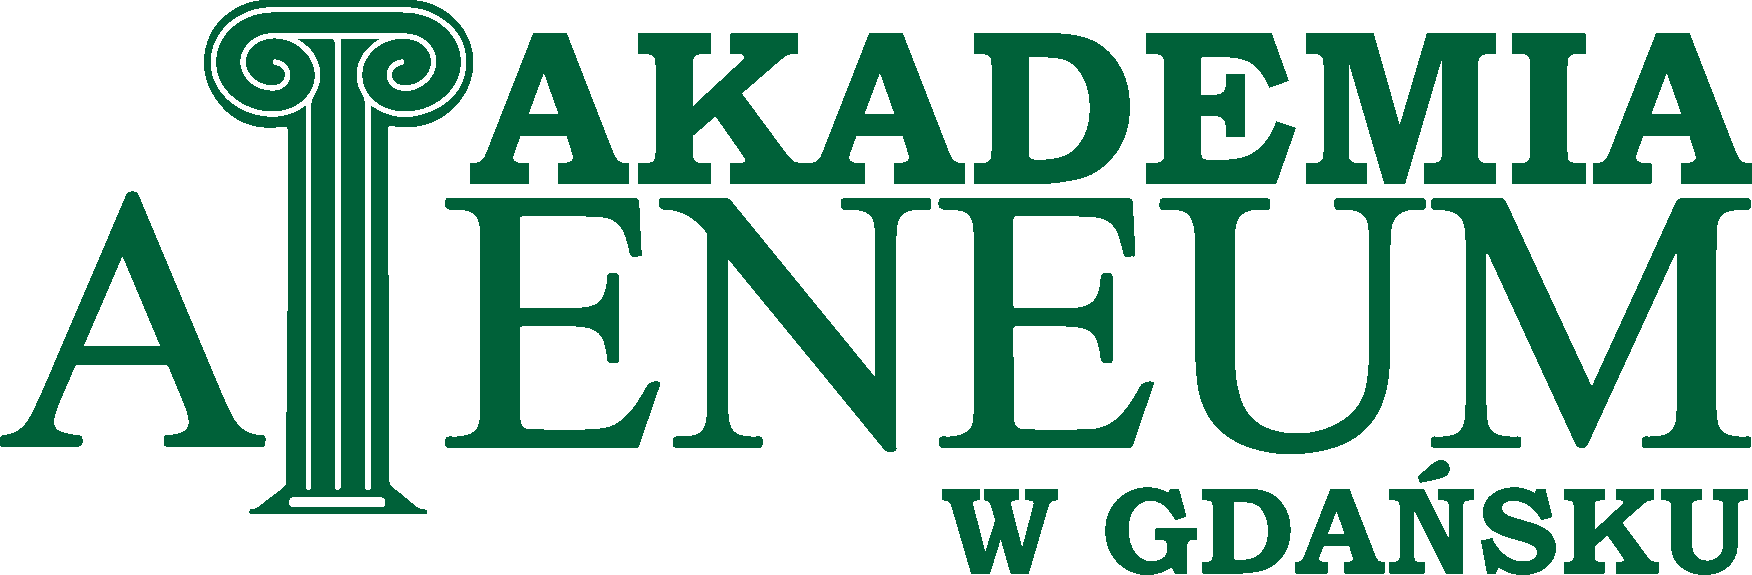 Logo Akademia Ateneum w Gdańsku - Gdańsk